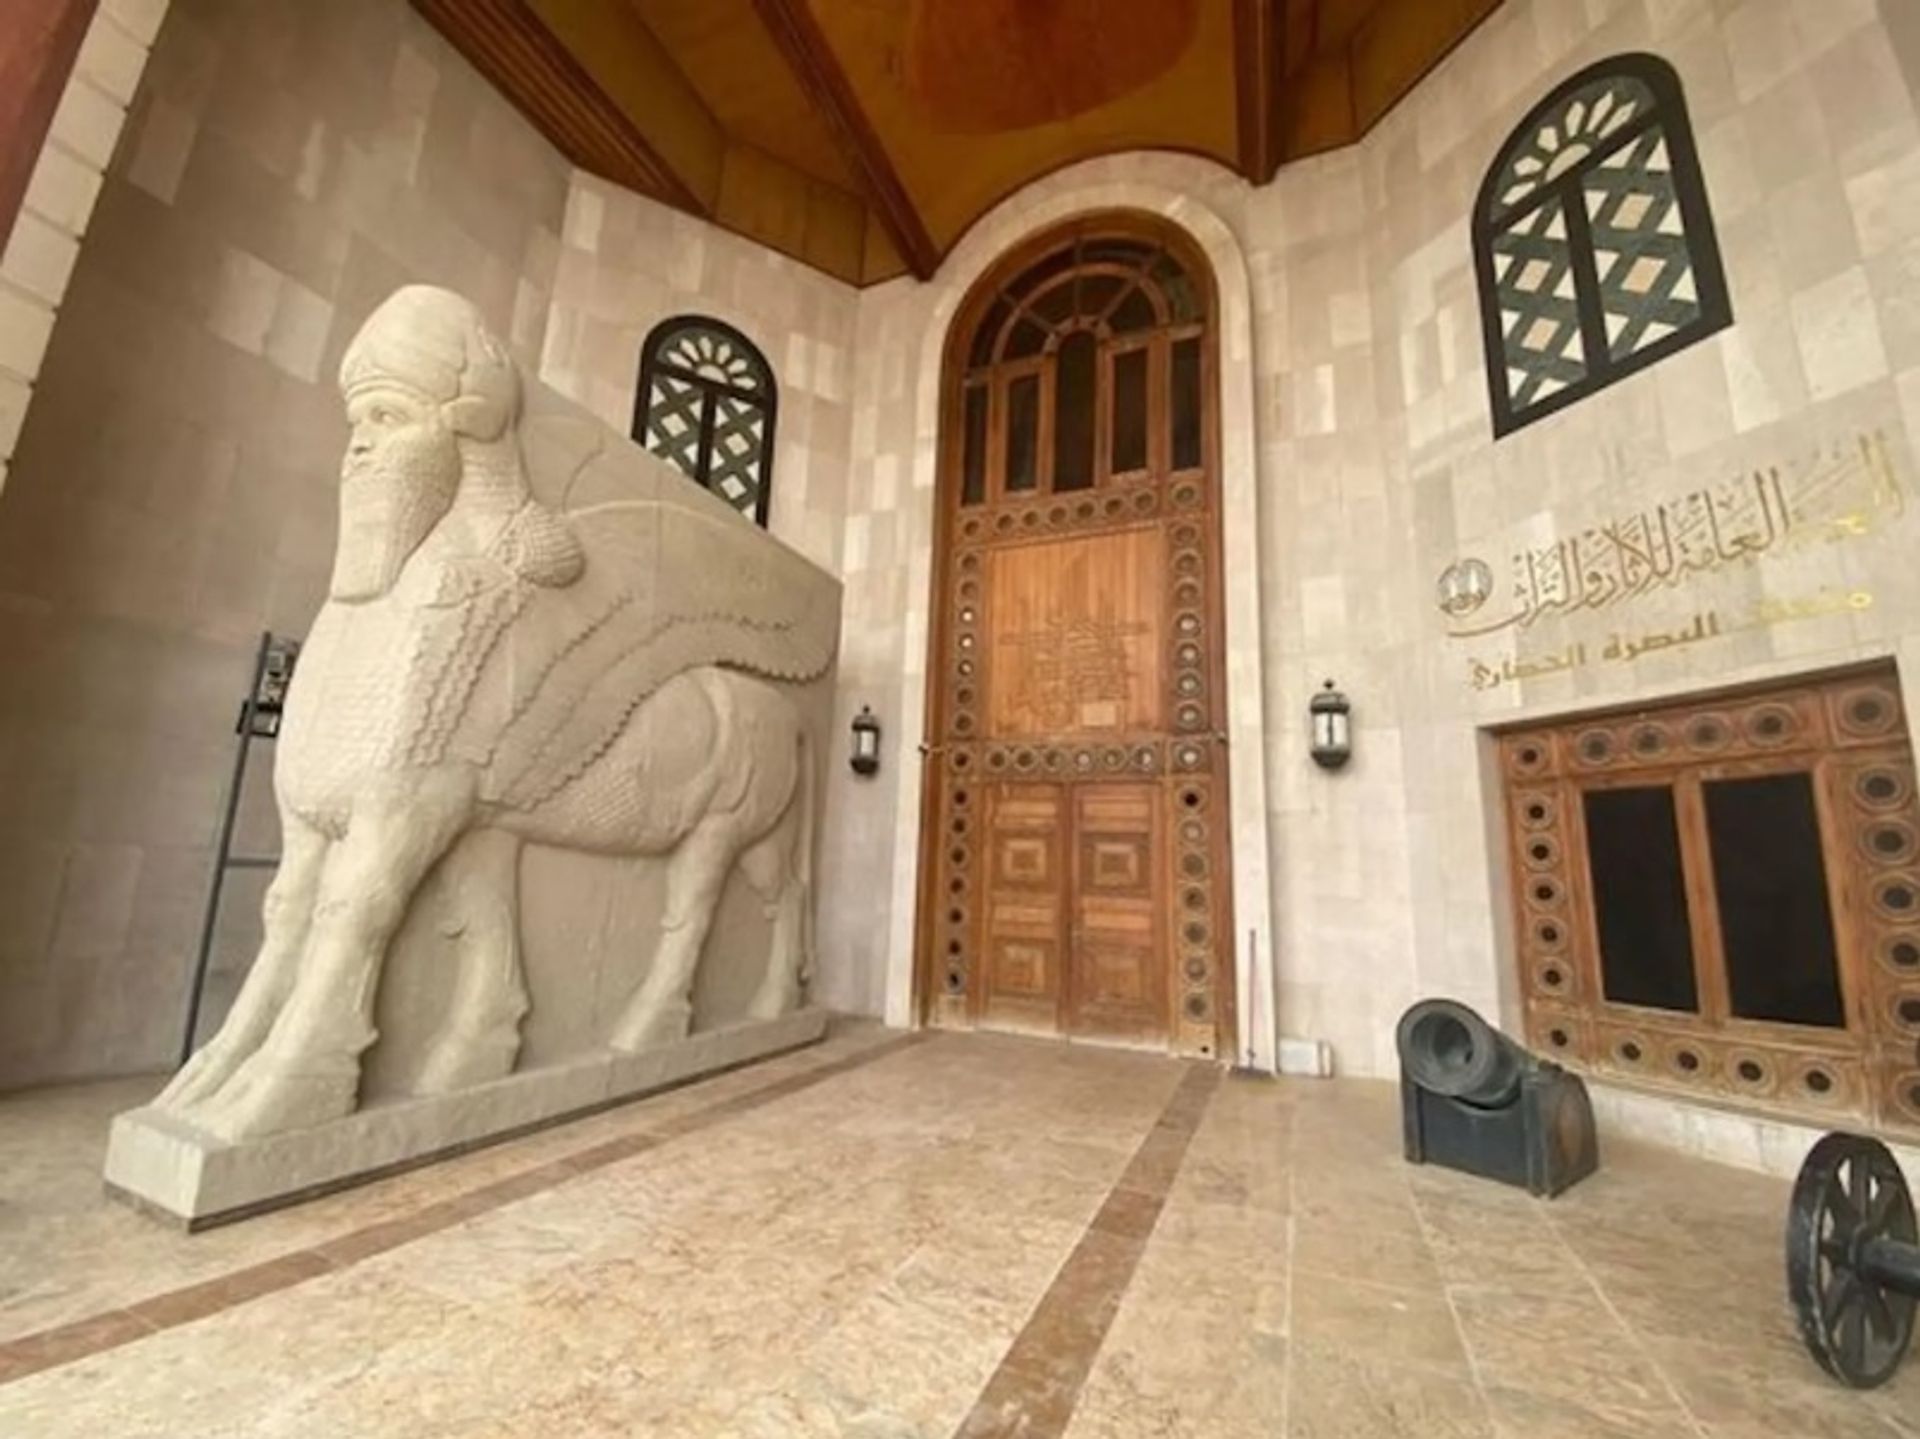 העתק של למאסו האשורי מהמוזיאון העיראקי בבגדד עומד כעת בכניסה למוזיאון בצרה

באדיבות מוזיאון בצרה